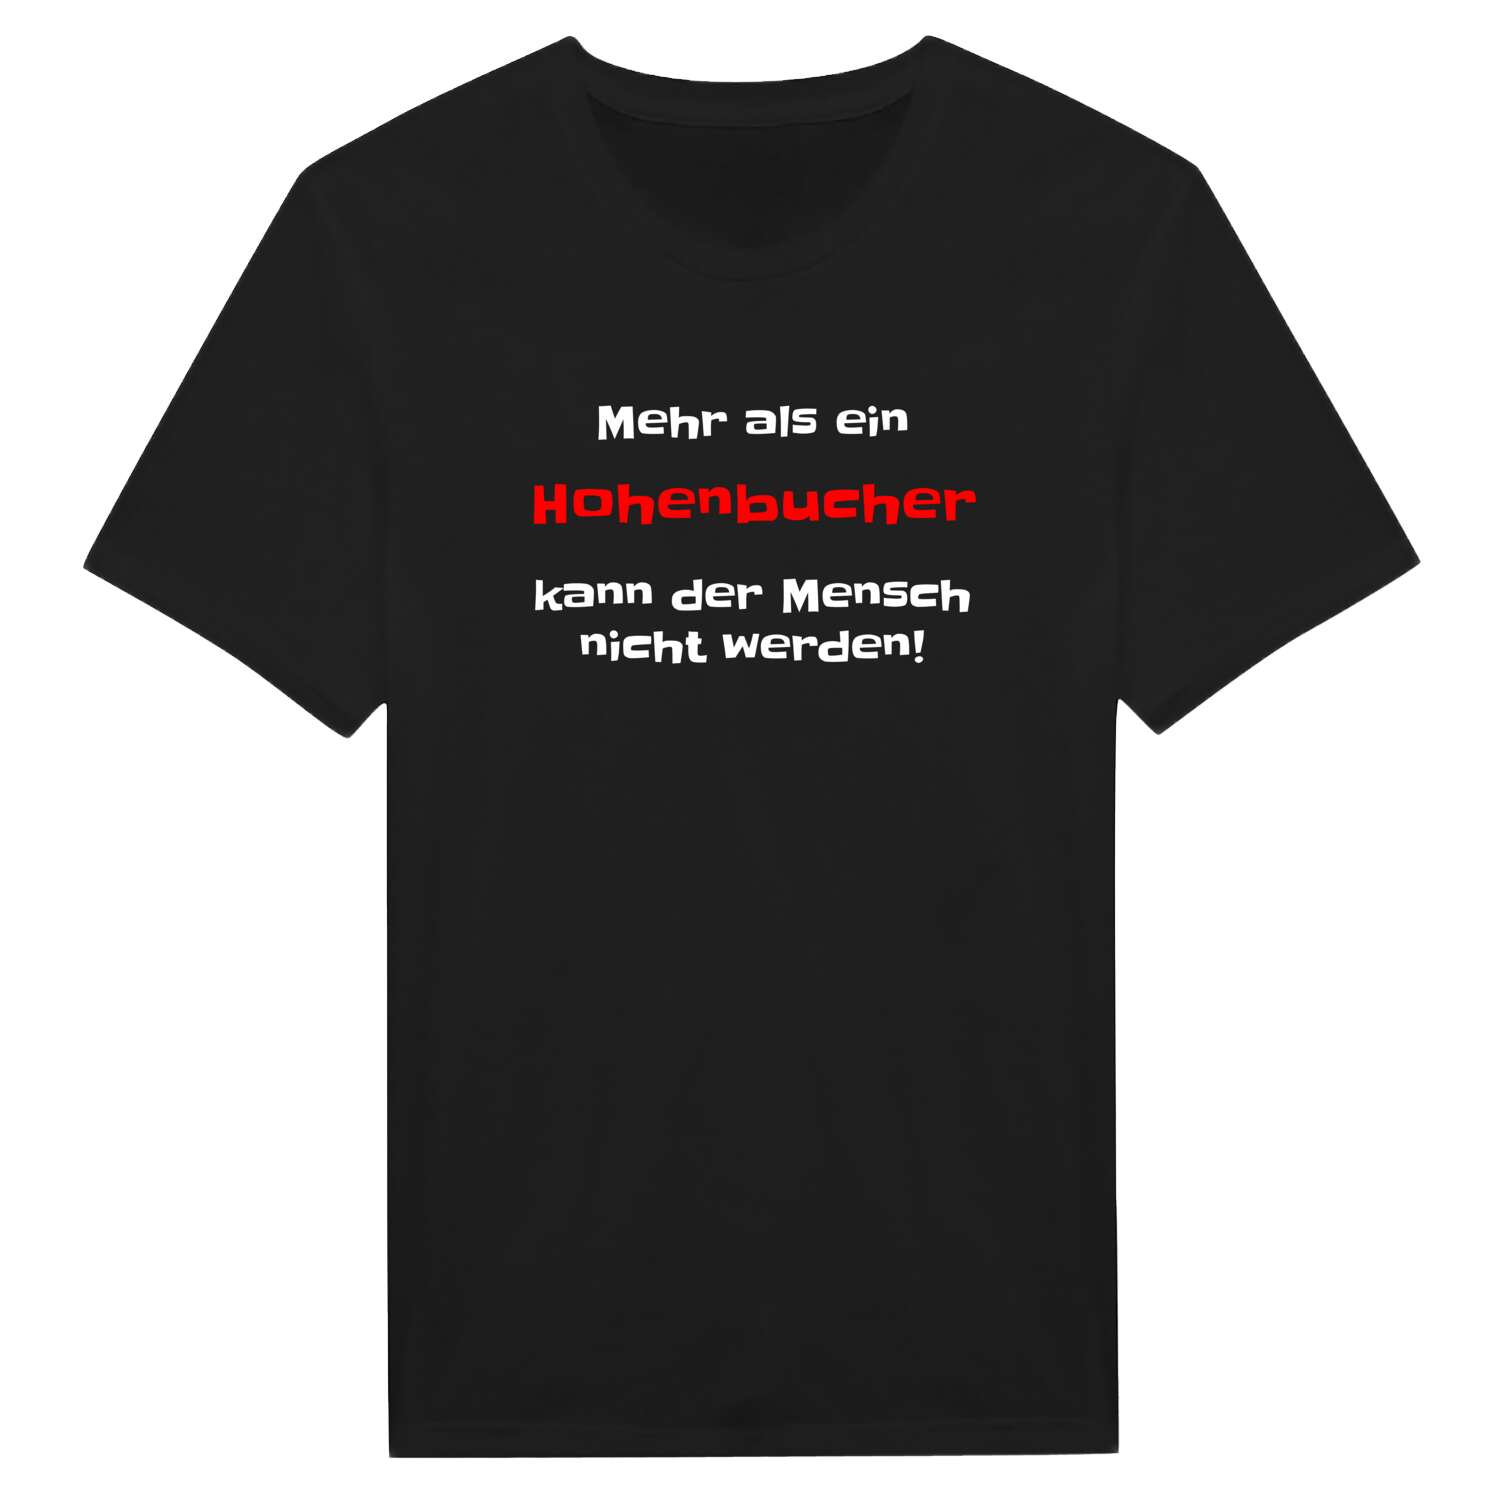 Hohenbuch T-Shirt »Mehr als ein«